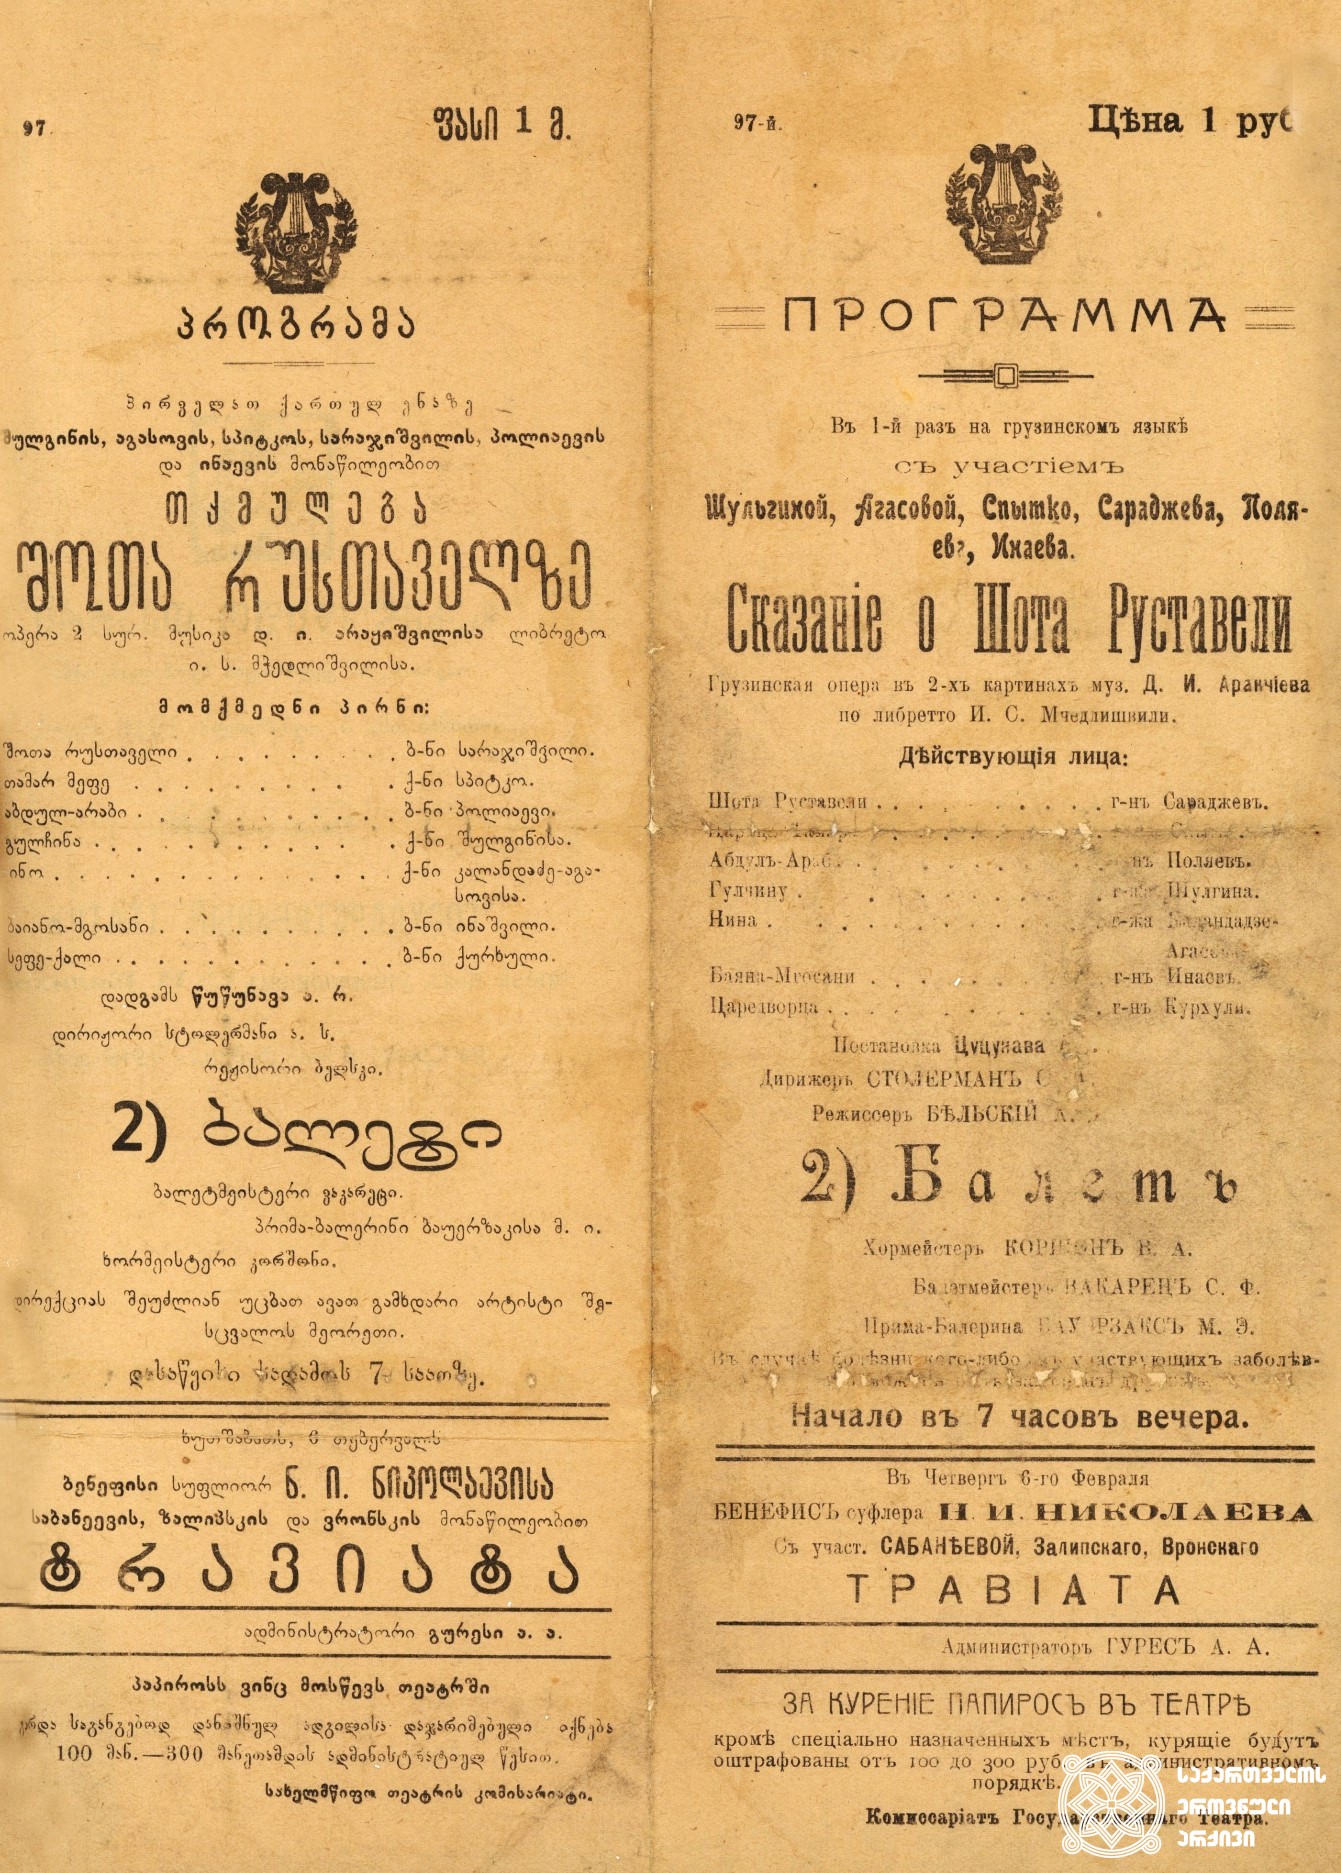 პროგრამა ოპერისა „თქმულება შოთა რუსთაველზე“. <br>
მუსიკა დიმიტრი არაყიშვილისა, ლიბრეტო იოსებ მჭედლიშვილისა, დადგმა ალექსანდრე წუწუნავასი, დირიჟორი, სამუელ სტოლერმანი. <br>
თბილისის სახელმწიფო თეატრი, 1919 წელი.<br>
Program of the opera “Tkmuleba Shota Rustavelze” (Narration about Shota Rustaveli)
Music by Dimitri Arakishvili, libretto by Ioseb Mchedlishvili, production by Alexandre Tsutsunava, conductor Samuel Stolerman. <br>
The on-stage history of Georgian national opera start with this production. <br>
Tbilisi State Theatre, 1919.